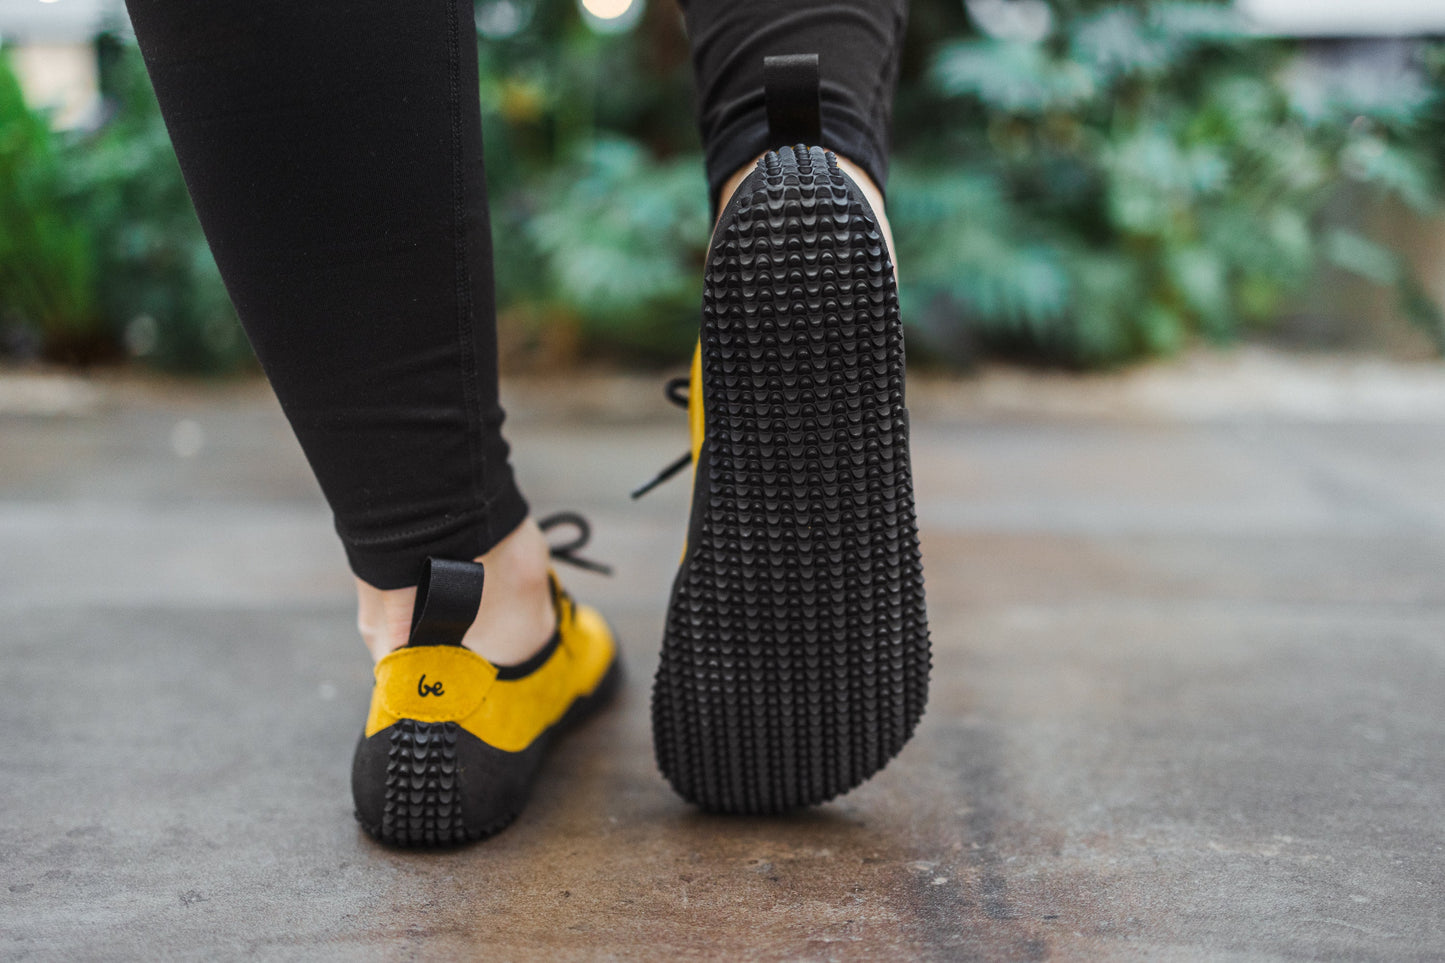 Barefoot Shoes Be Lenka Trailwalker 2.0 - Mustard